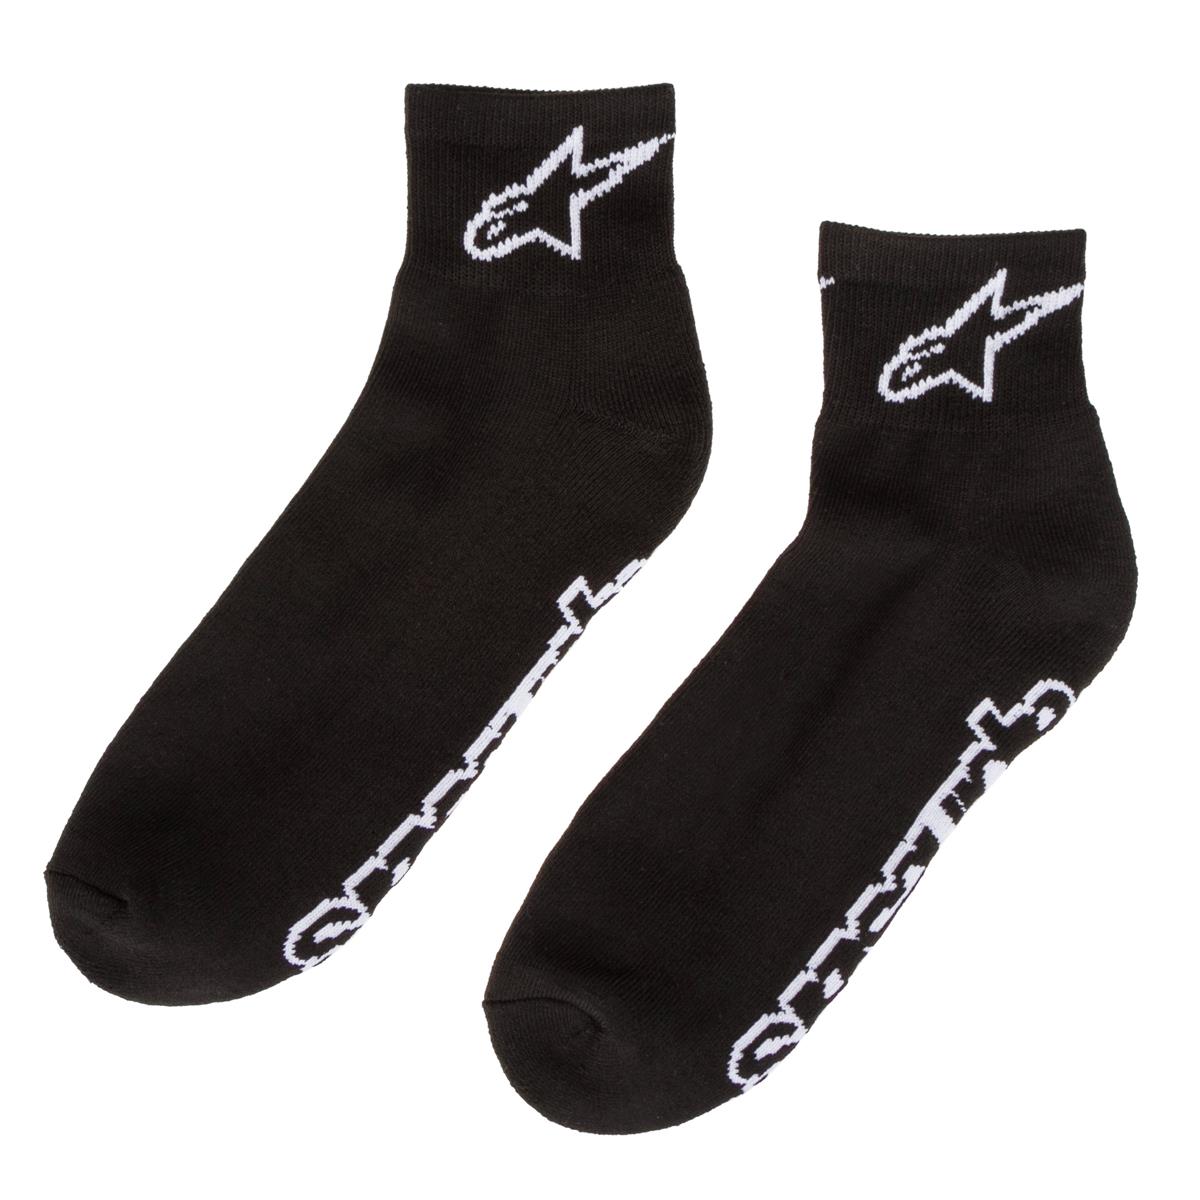 Alpinestars Socks Ankle Black